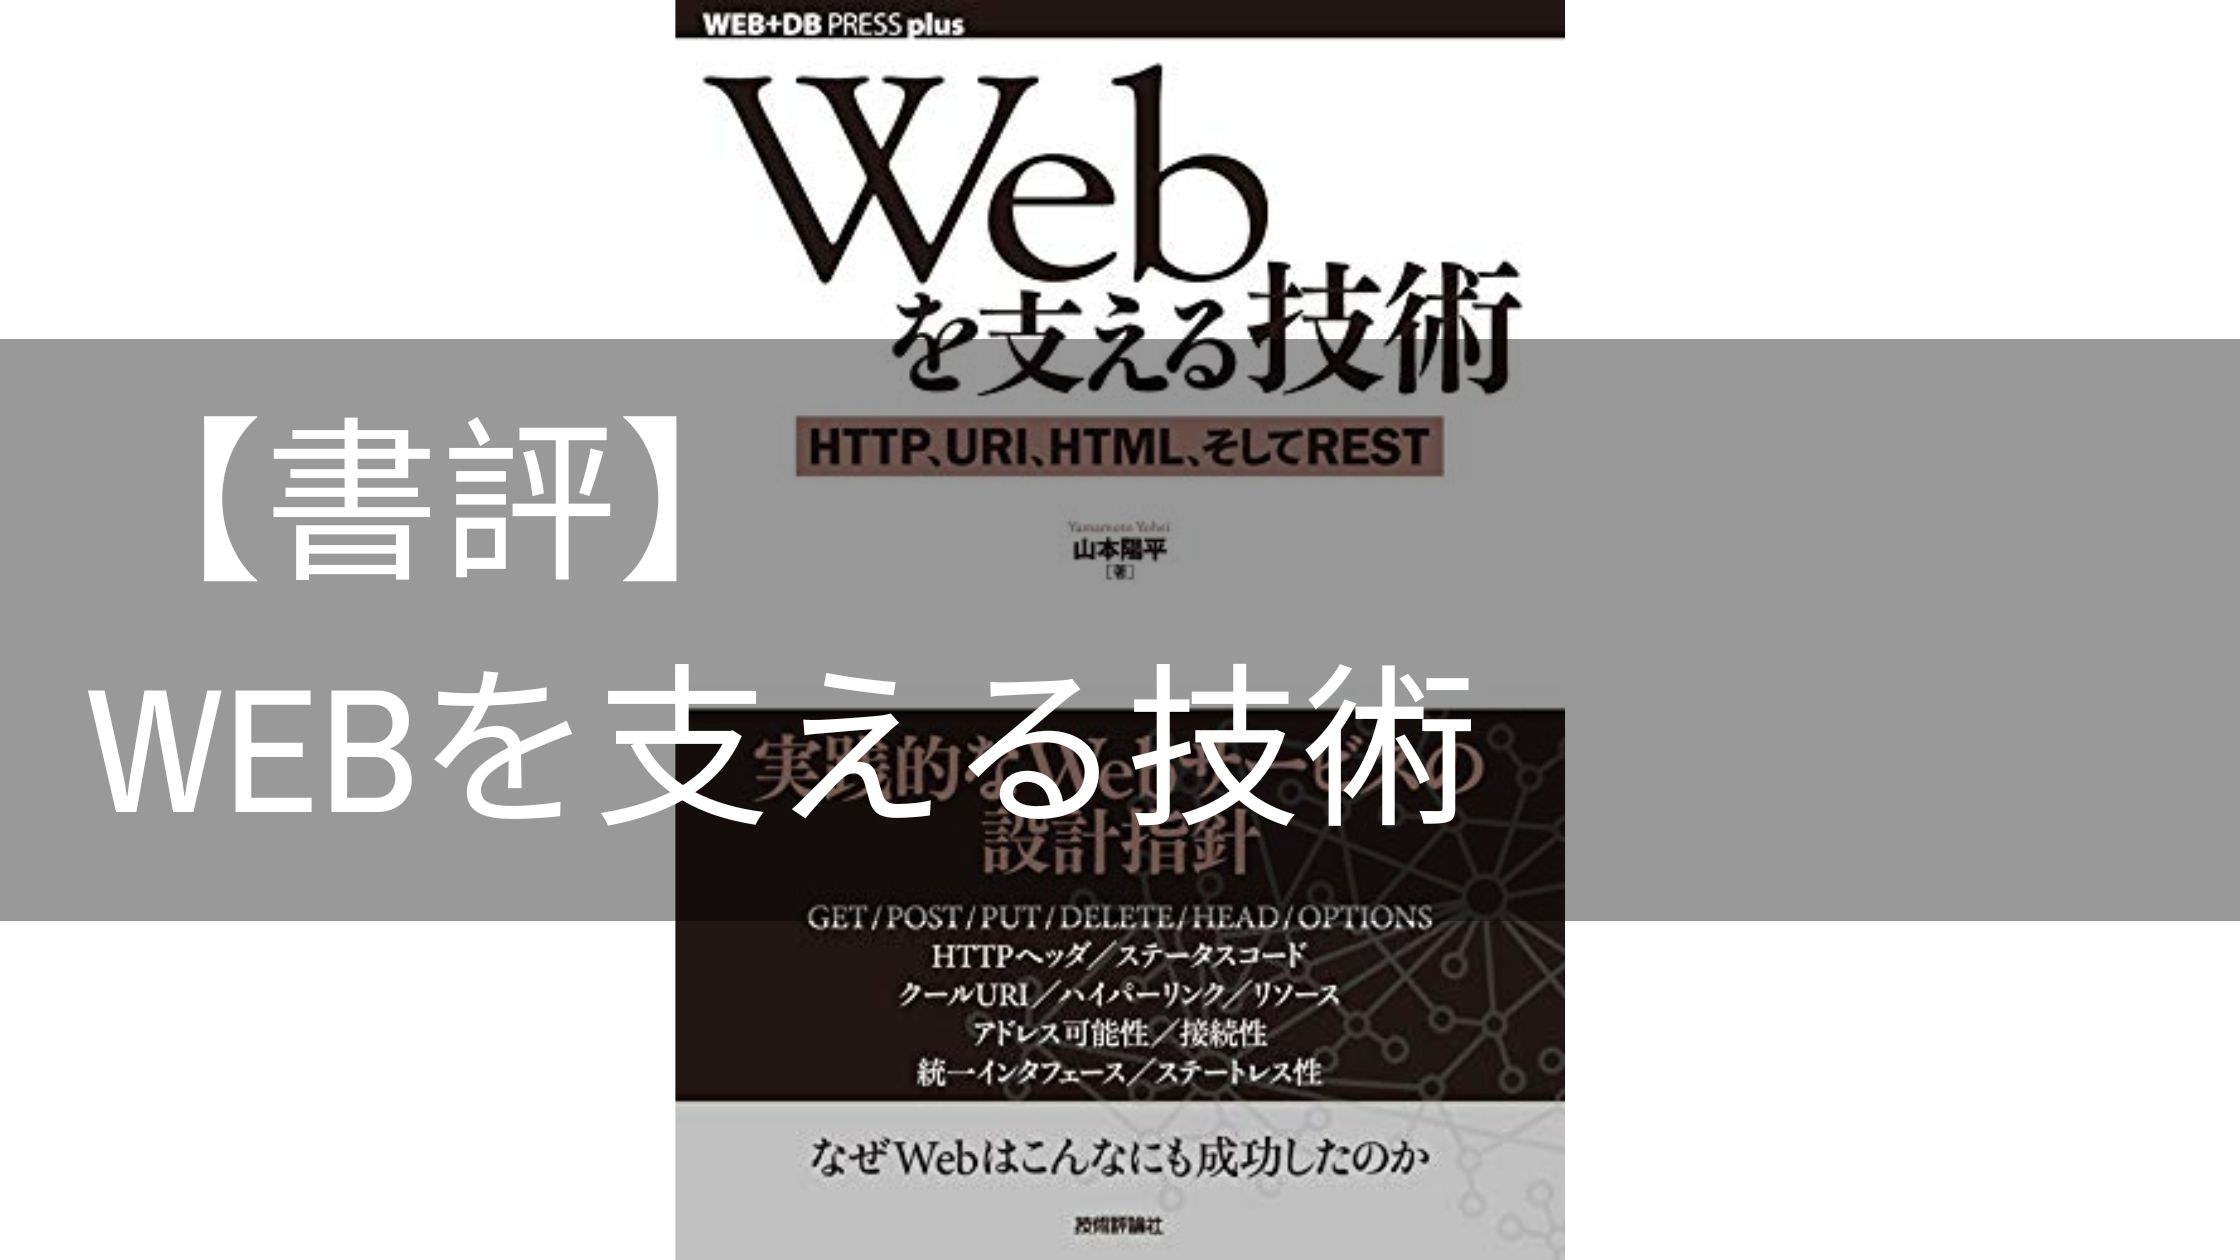 【書評】Webを支える技術―HTTP，URI，HTML，そしてREST WEB+DB PRESS